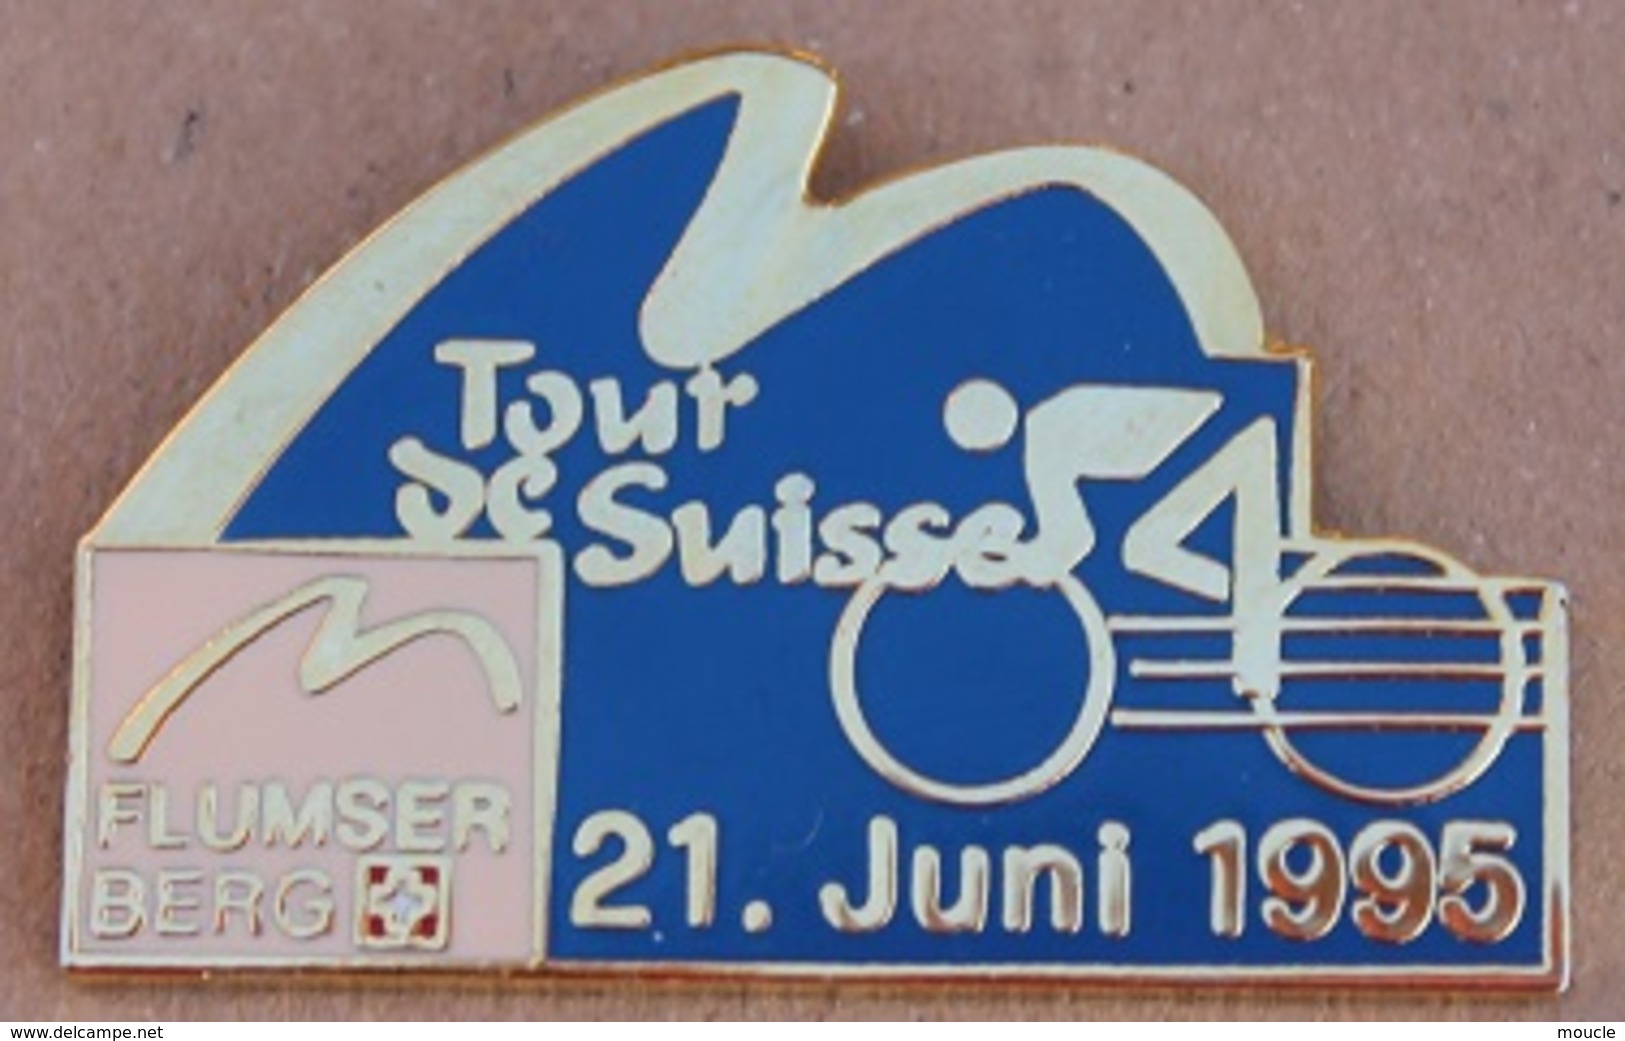 CYCLISME - VELO - CYCLISTE - TOUR DE SUISSE 21 JUNI 1995 - FLUMSER BERG  -      (16) - Cycling